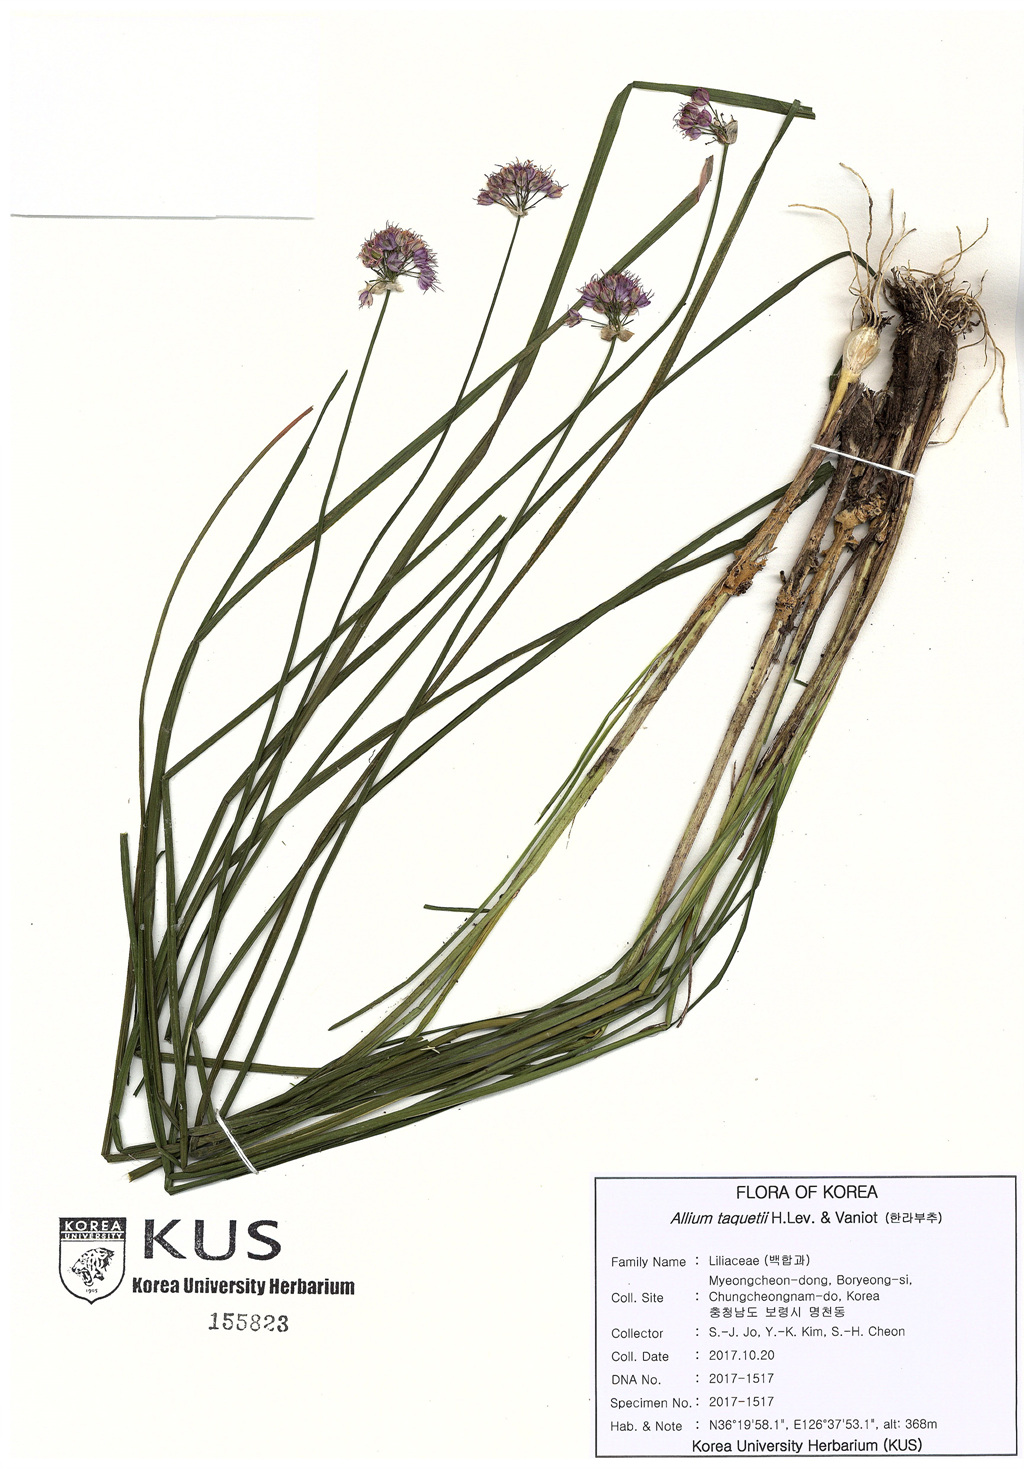 Allium taquetii H.Lev. & Vaniot